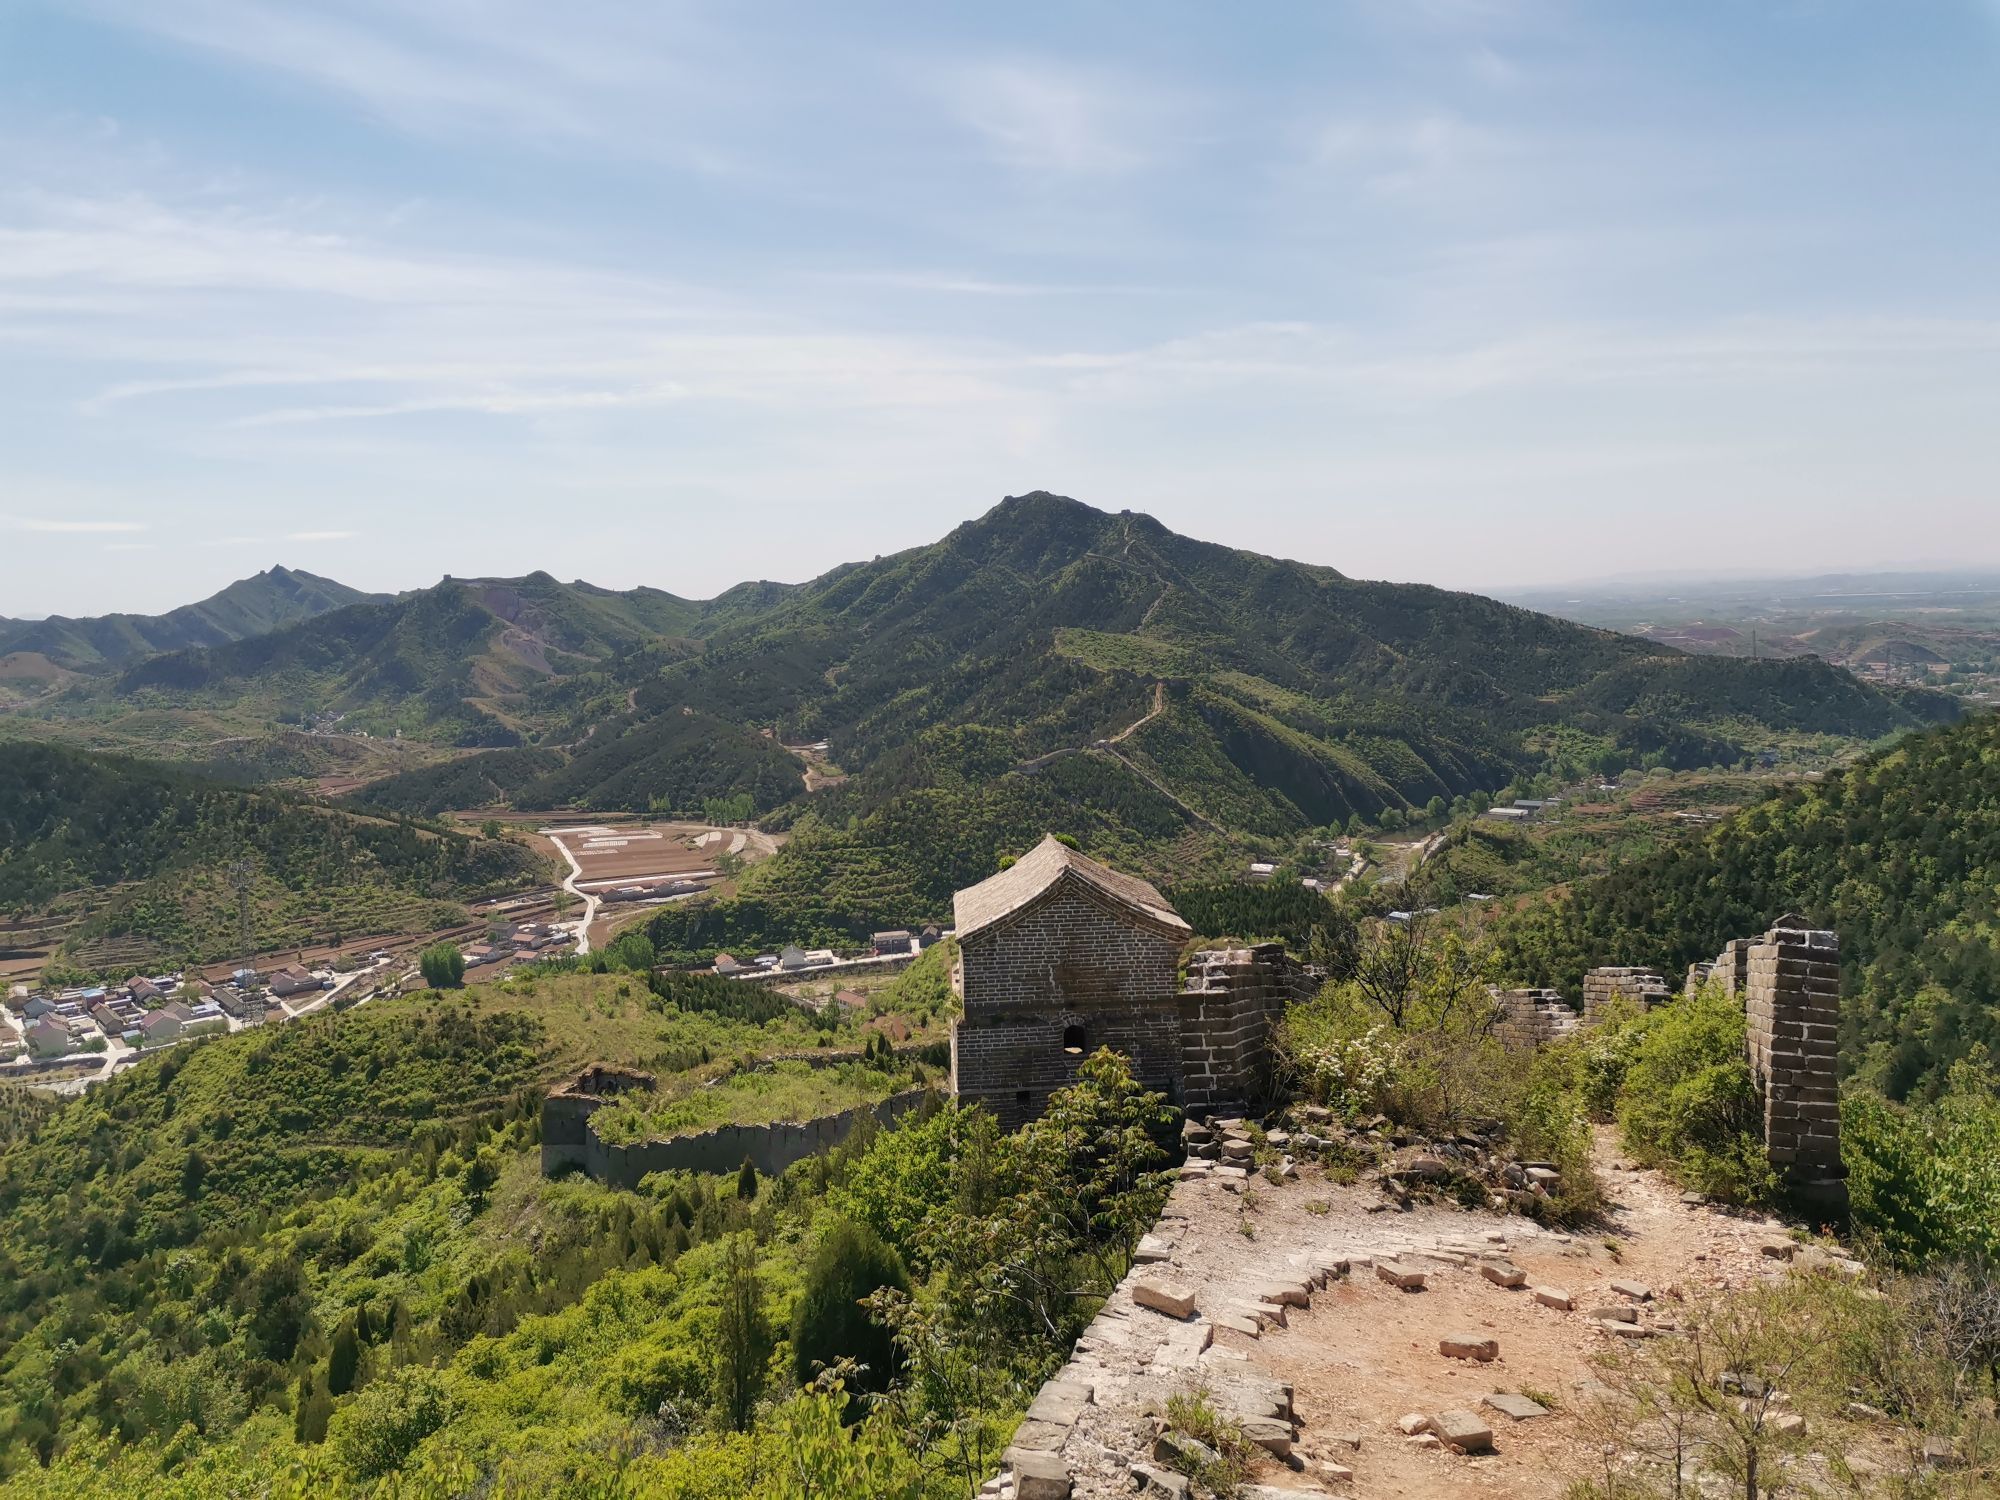 广灵县白羊峪景点图片